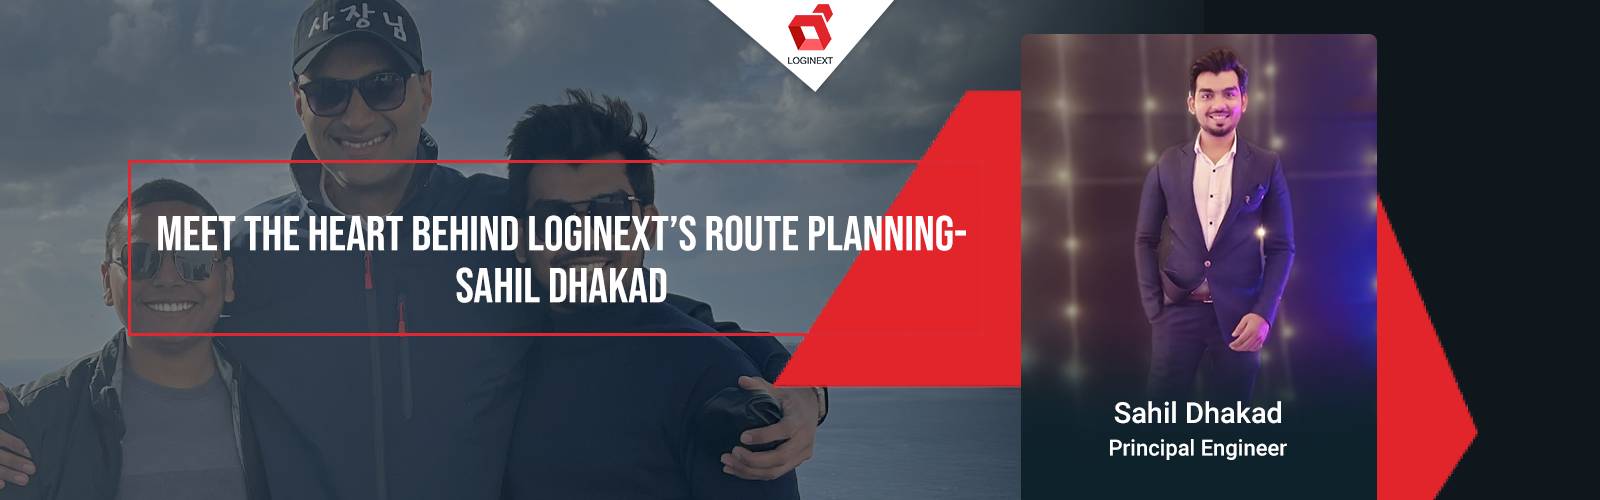 Incontra il cuore dietro la pianificazione del percorso di LogiNext - Sahil Dhakad su WeAreLogiNext